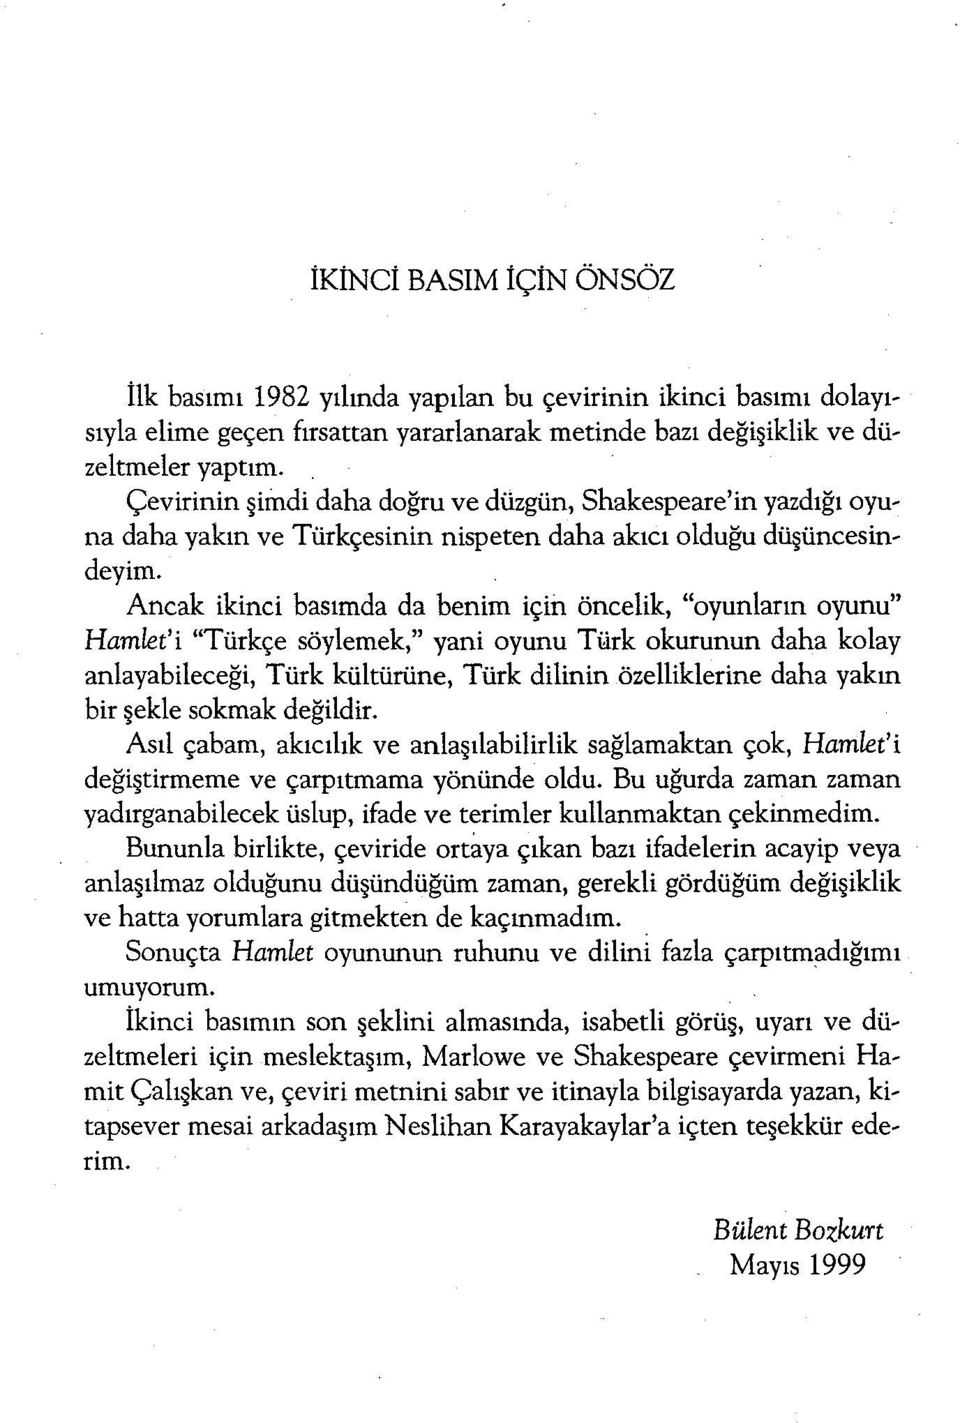 Ancak ikinci basımda da benim için öncelik, "oyunların oyunu" Hamlet'i "Türkçe söylemek," yani oyunu Türk okurunun daha kolay anlayabileceği, Türk kültürüne, Türk dilinin özelliklerine daha yakın bir